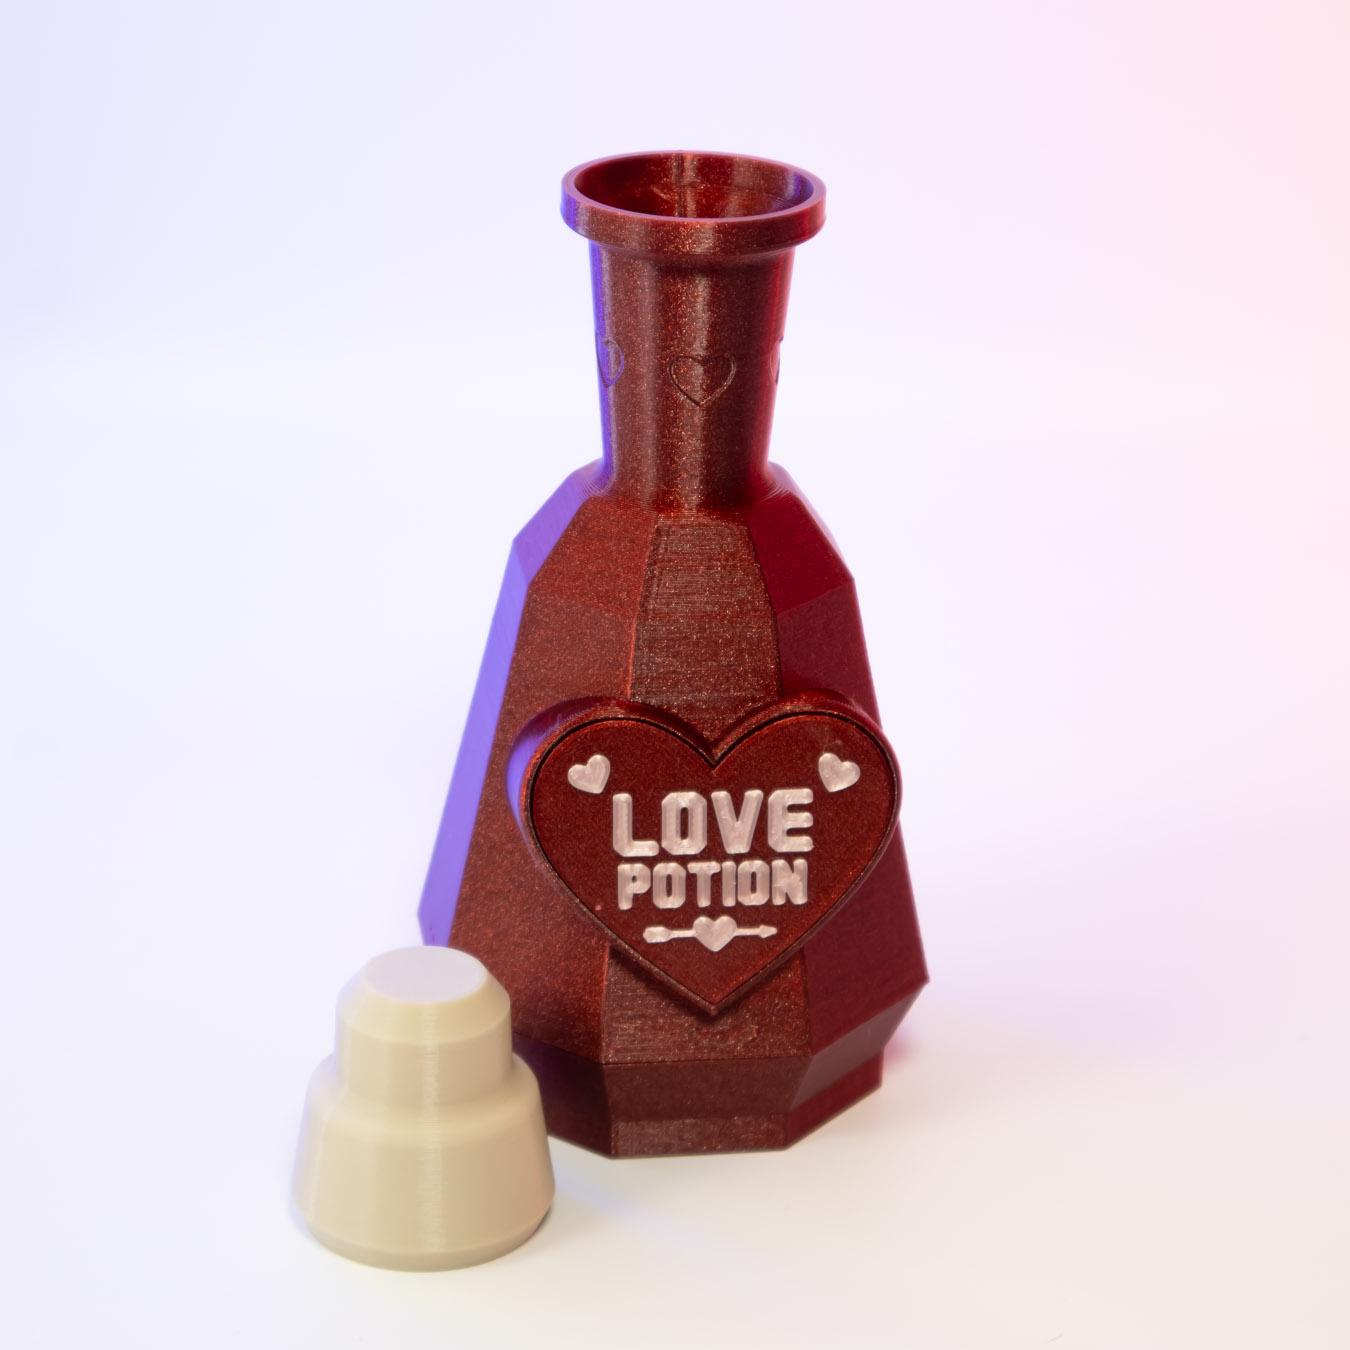 Love Potion Bottle - secret stash container 3d model